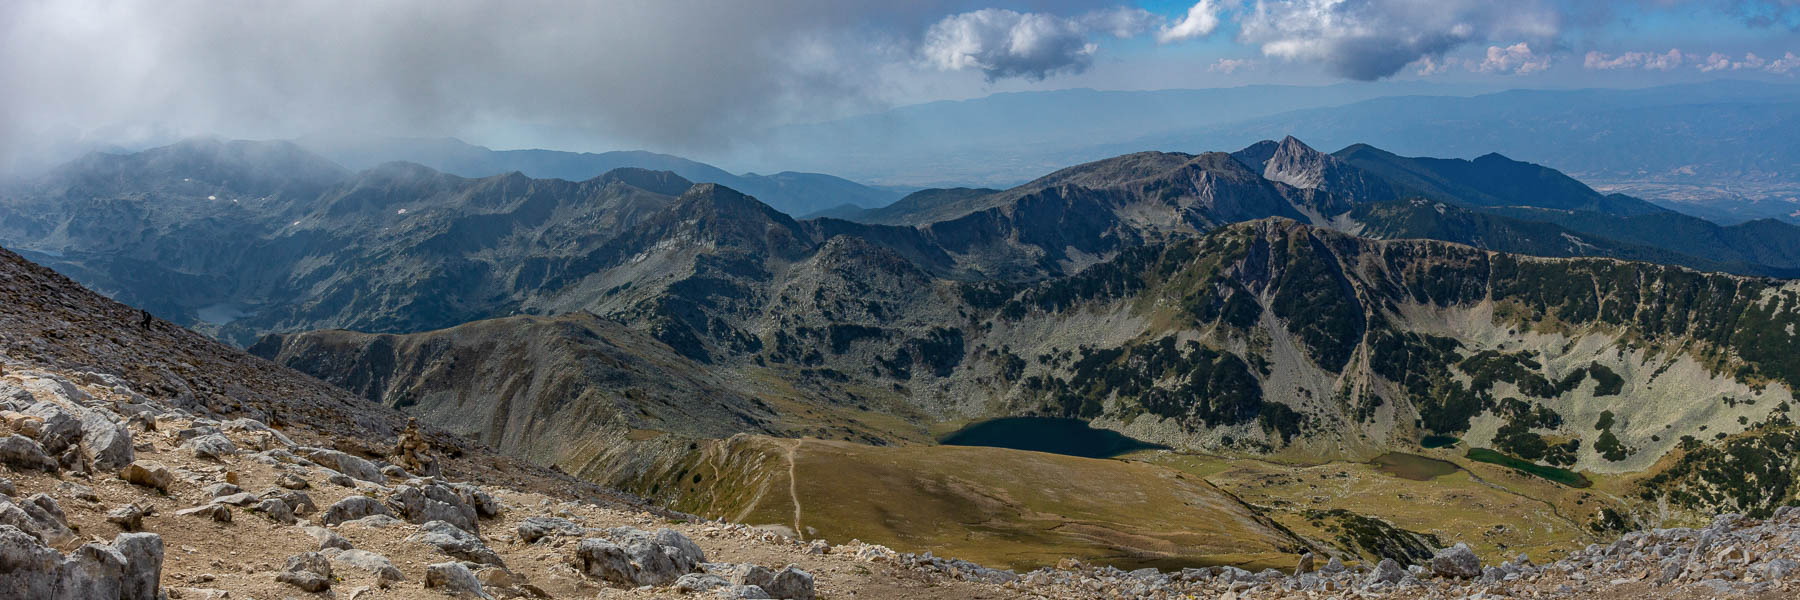 Massif de Pirin : mont Vihren, vue sud